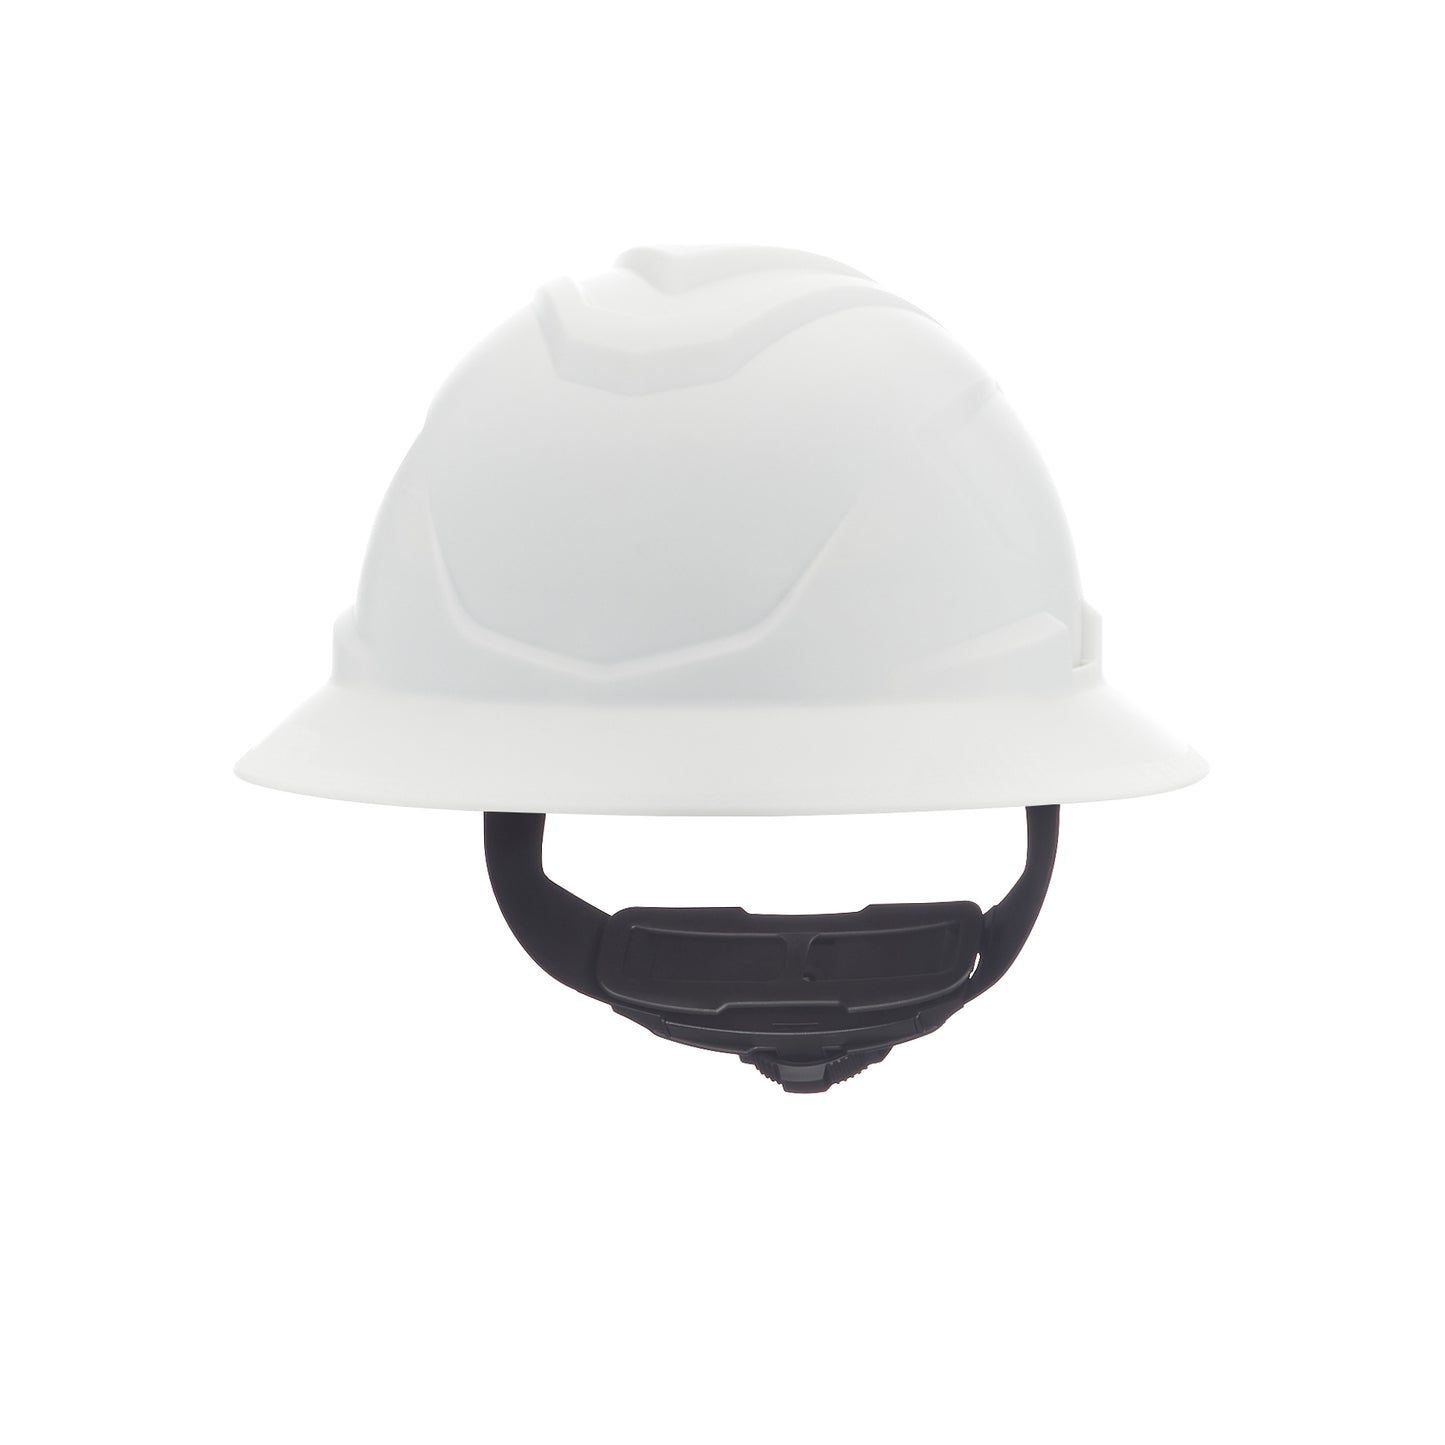 MSA V-Gard C1 Hard Hat - White